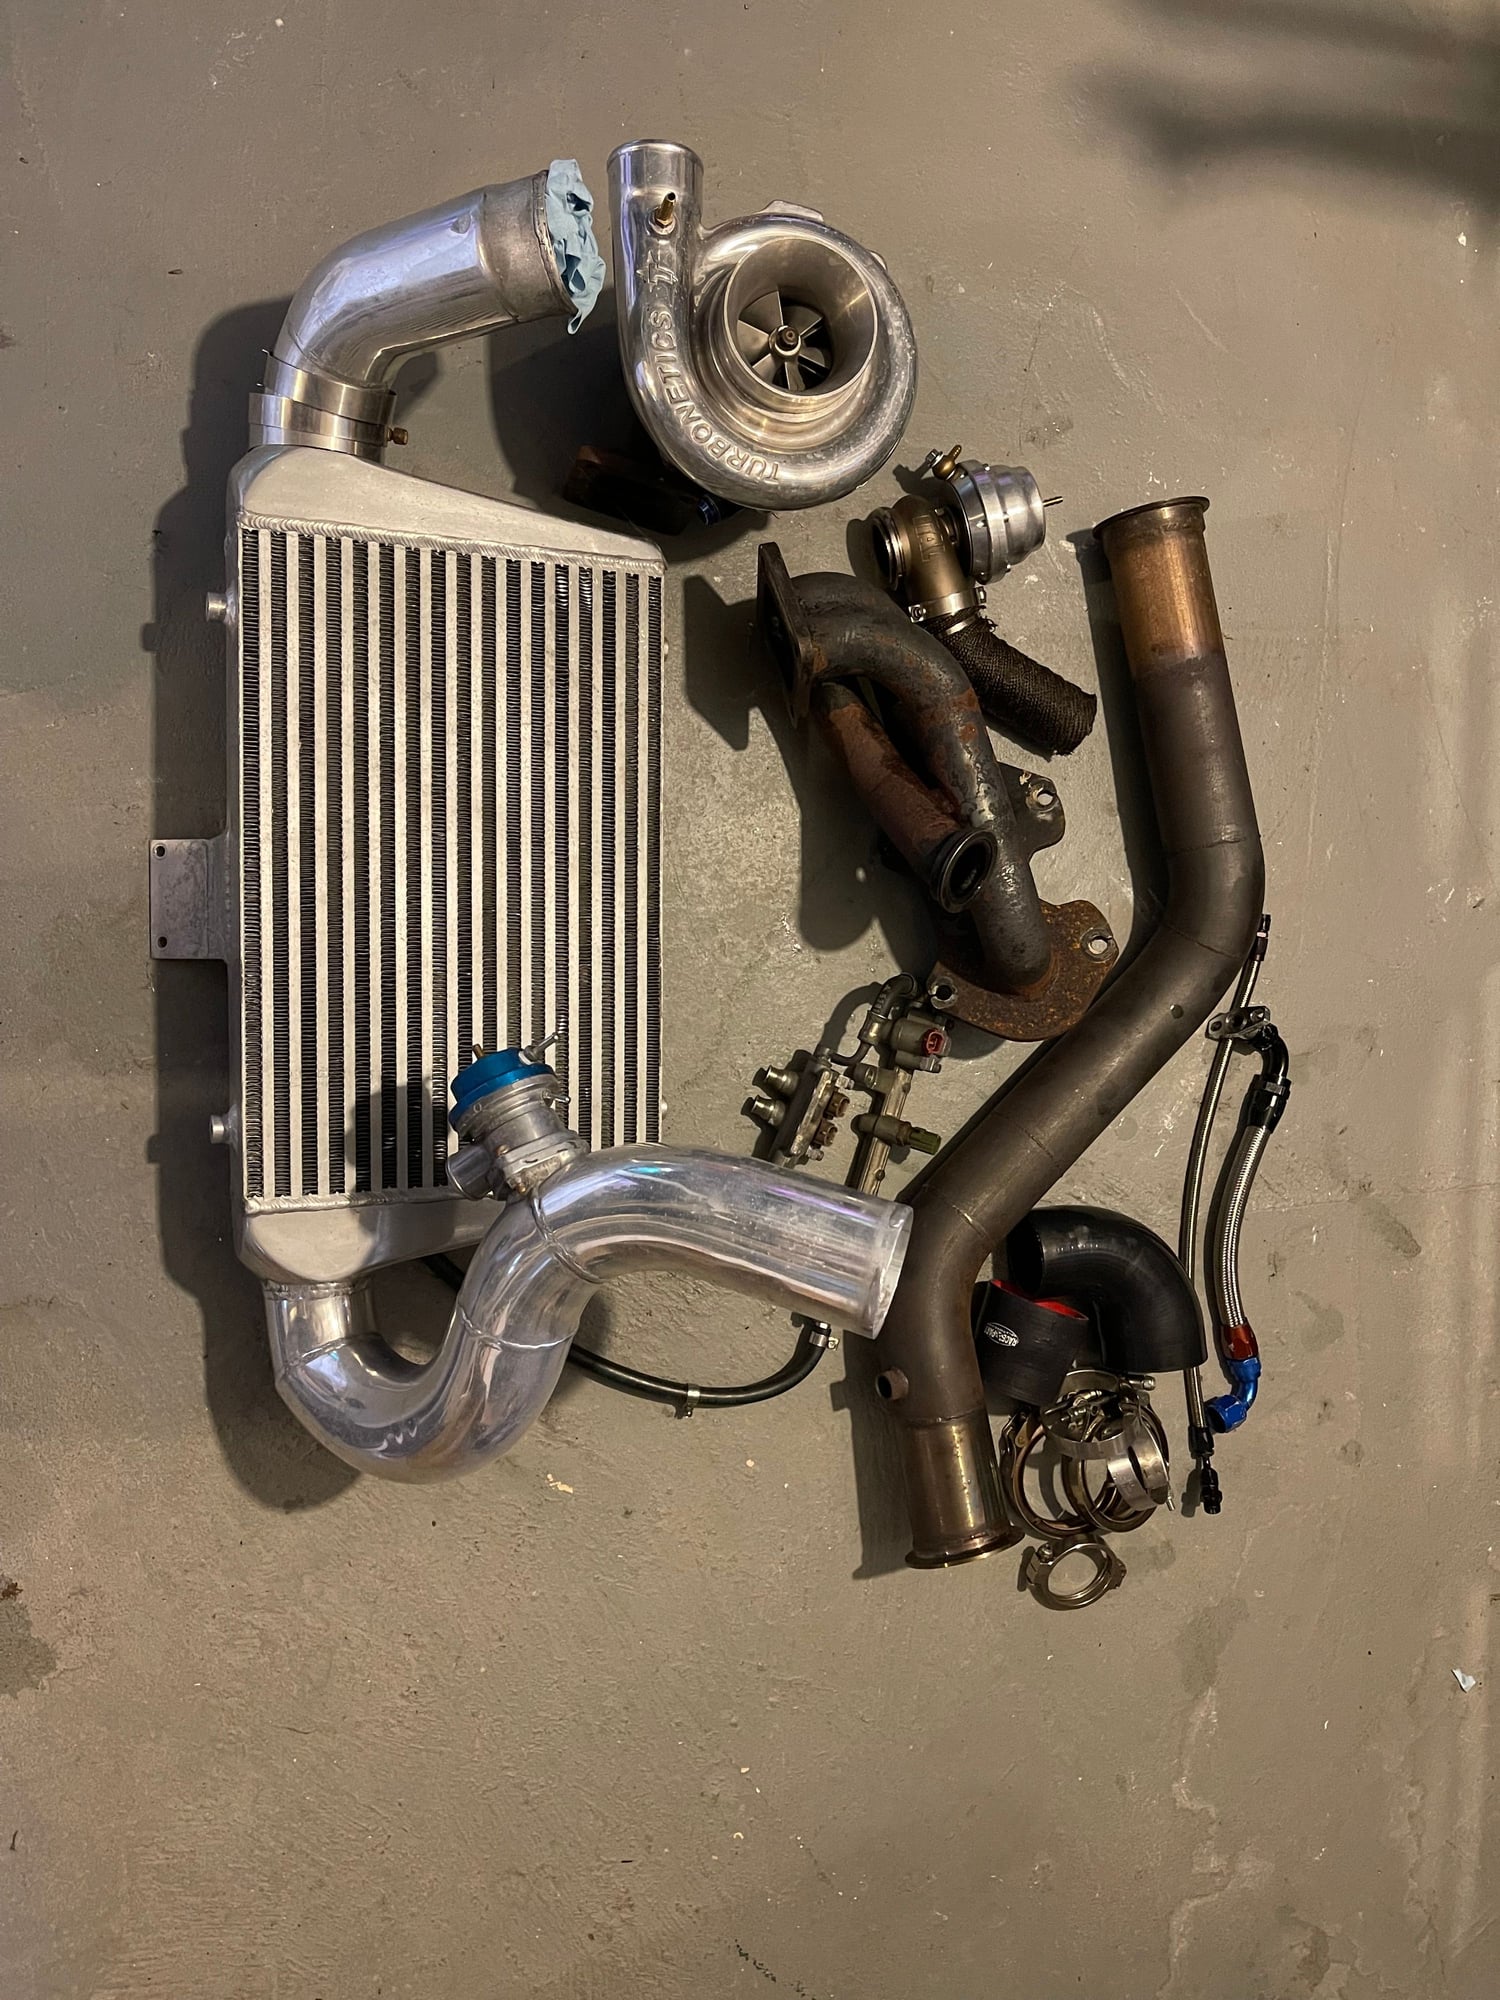 Engine - Power Adders - Single Turbo Kit (Turbonetics) - Used - 1993 Mazda RX-7 - Wall, NJ 07719, United States